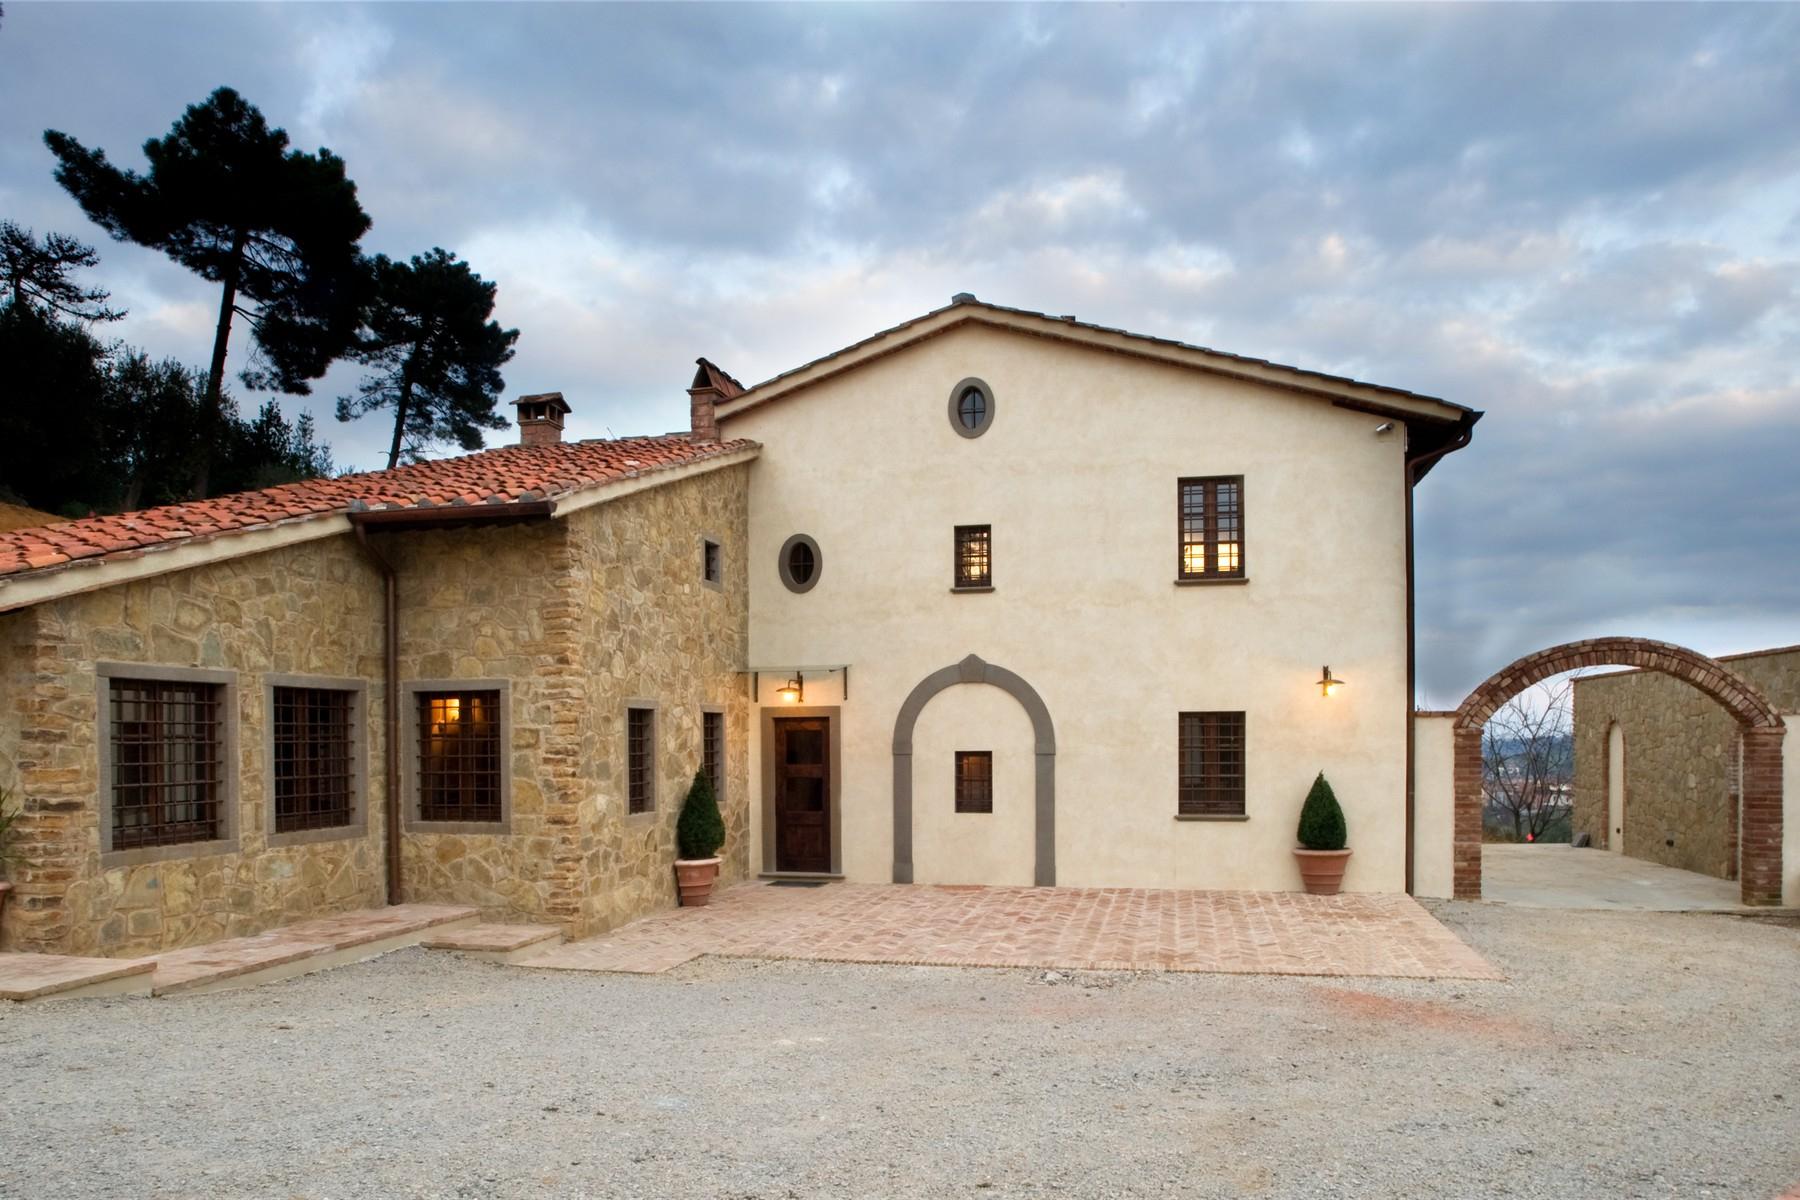 Casale in vendita nelle colline Toscane - 3